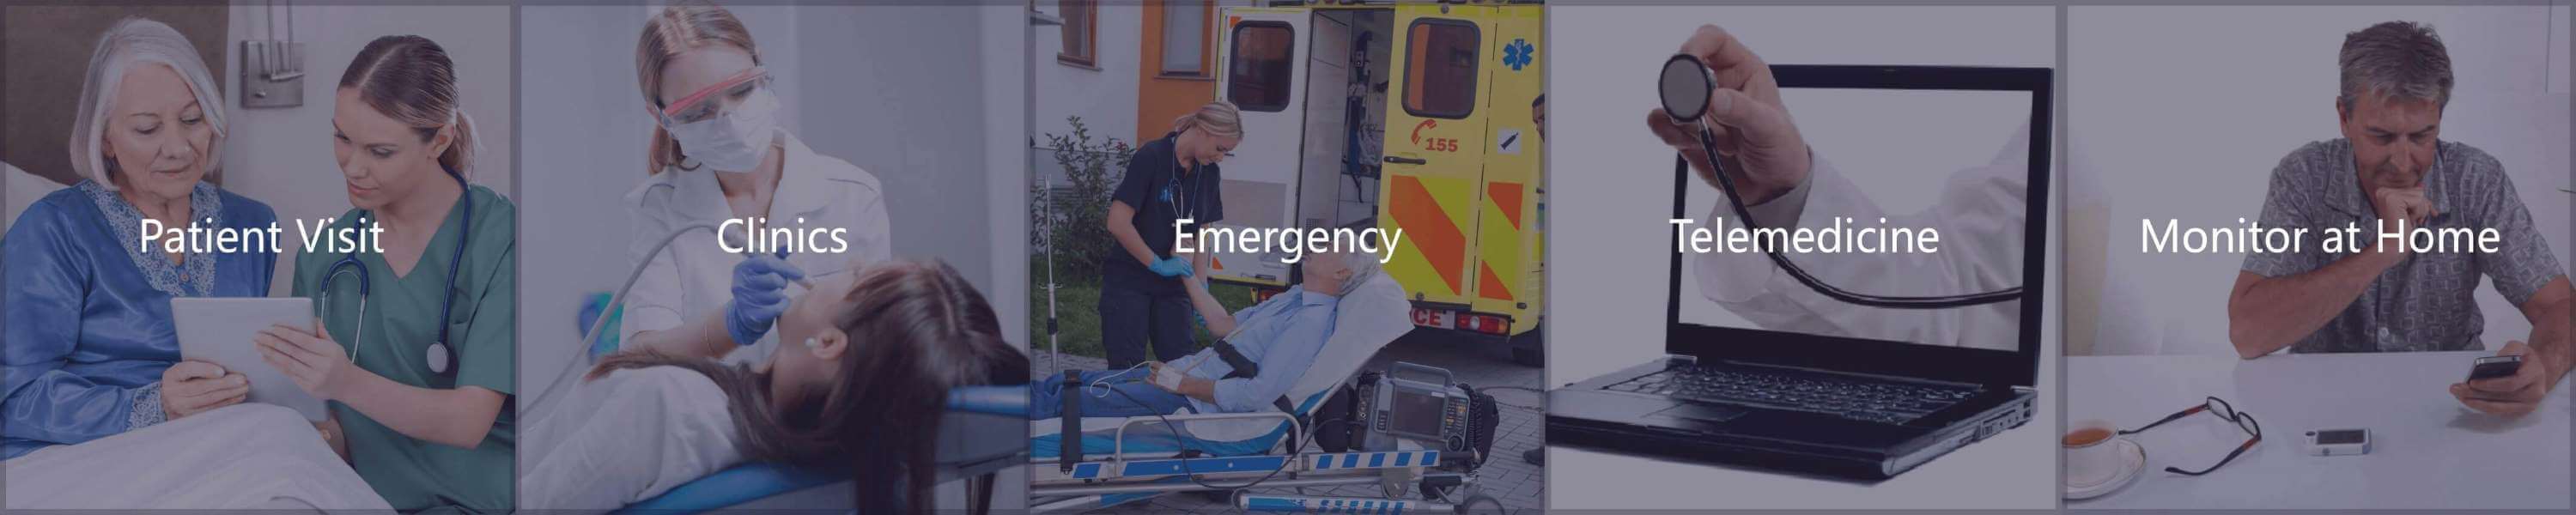 emergenza, telemedicina